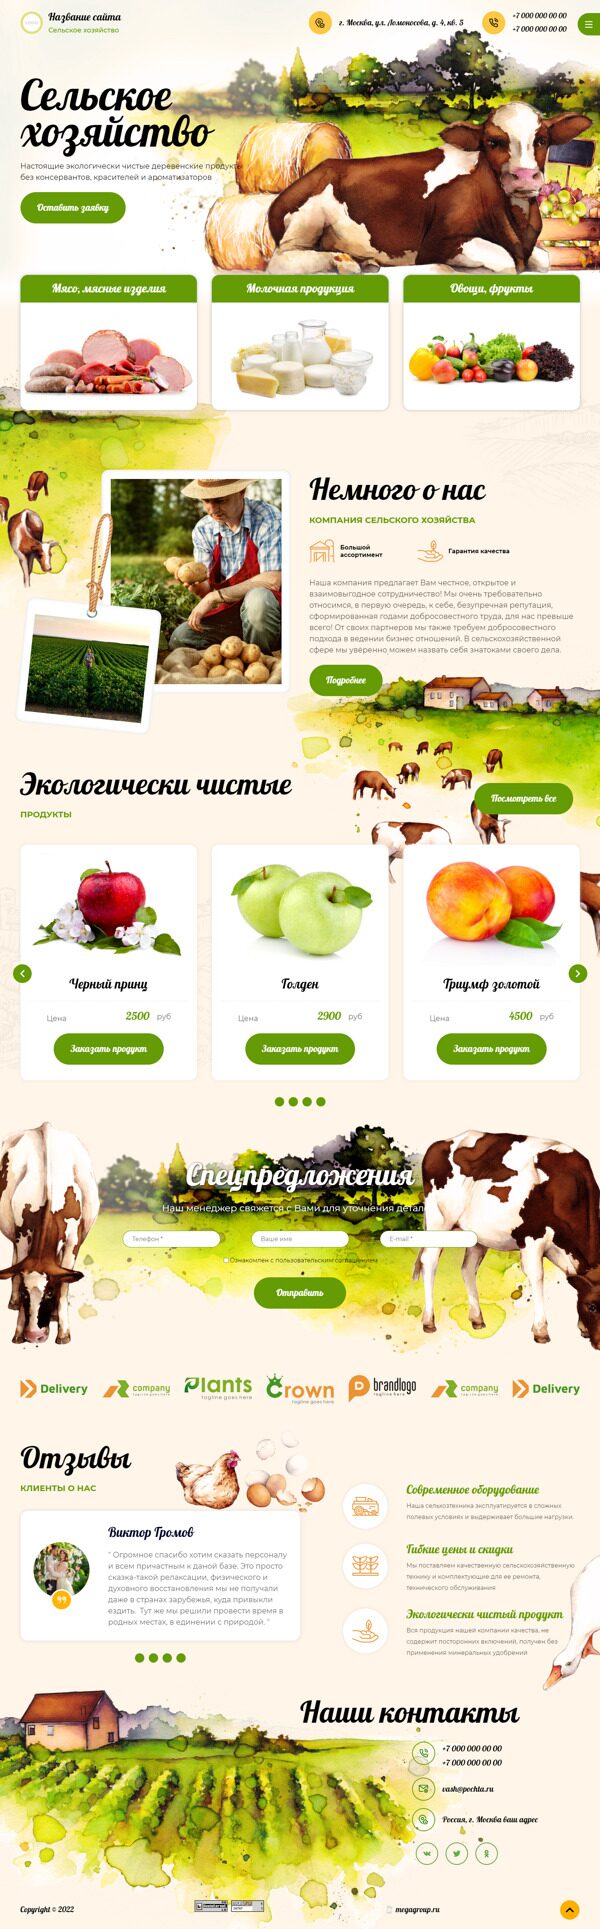 Готовый Сайт-Бизнес № 3990924 - Сельское хозяйство (Десктопная версия)